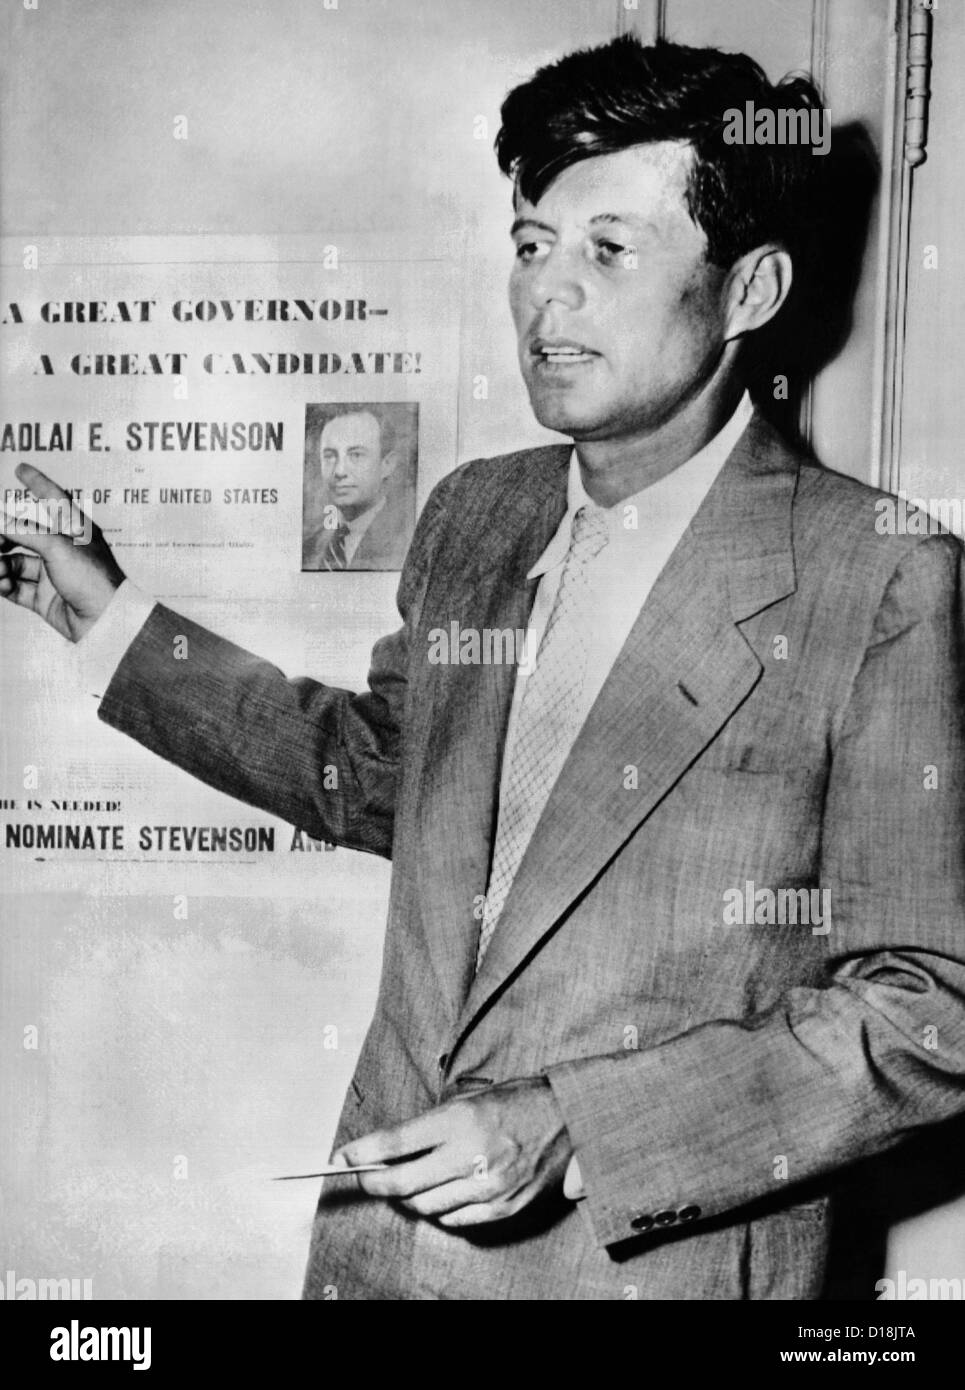 Kongressabgeordnete John Kennedy, Adlai Stevenson für 1952 Präsidentschaftskandidatur zu unterstützen. 22. Juli 1952. (CSU ALPHA 987) Stockfoto